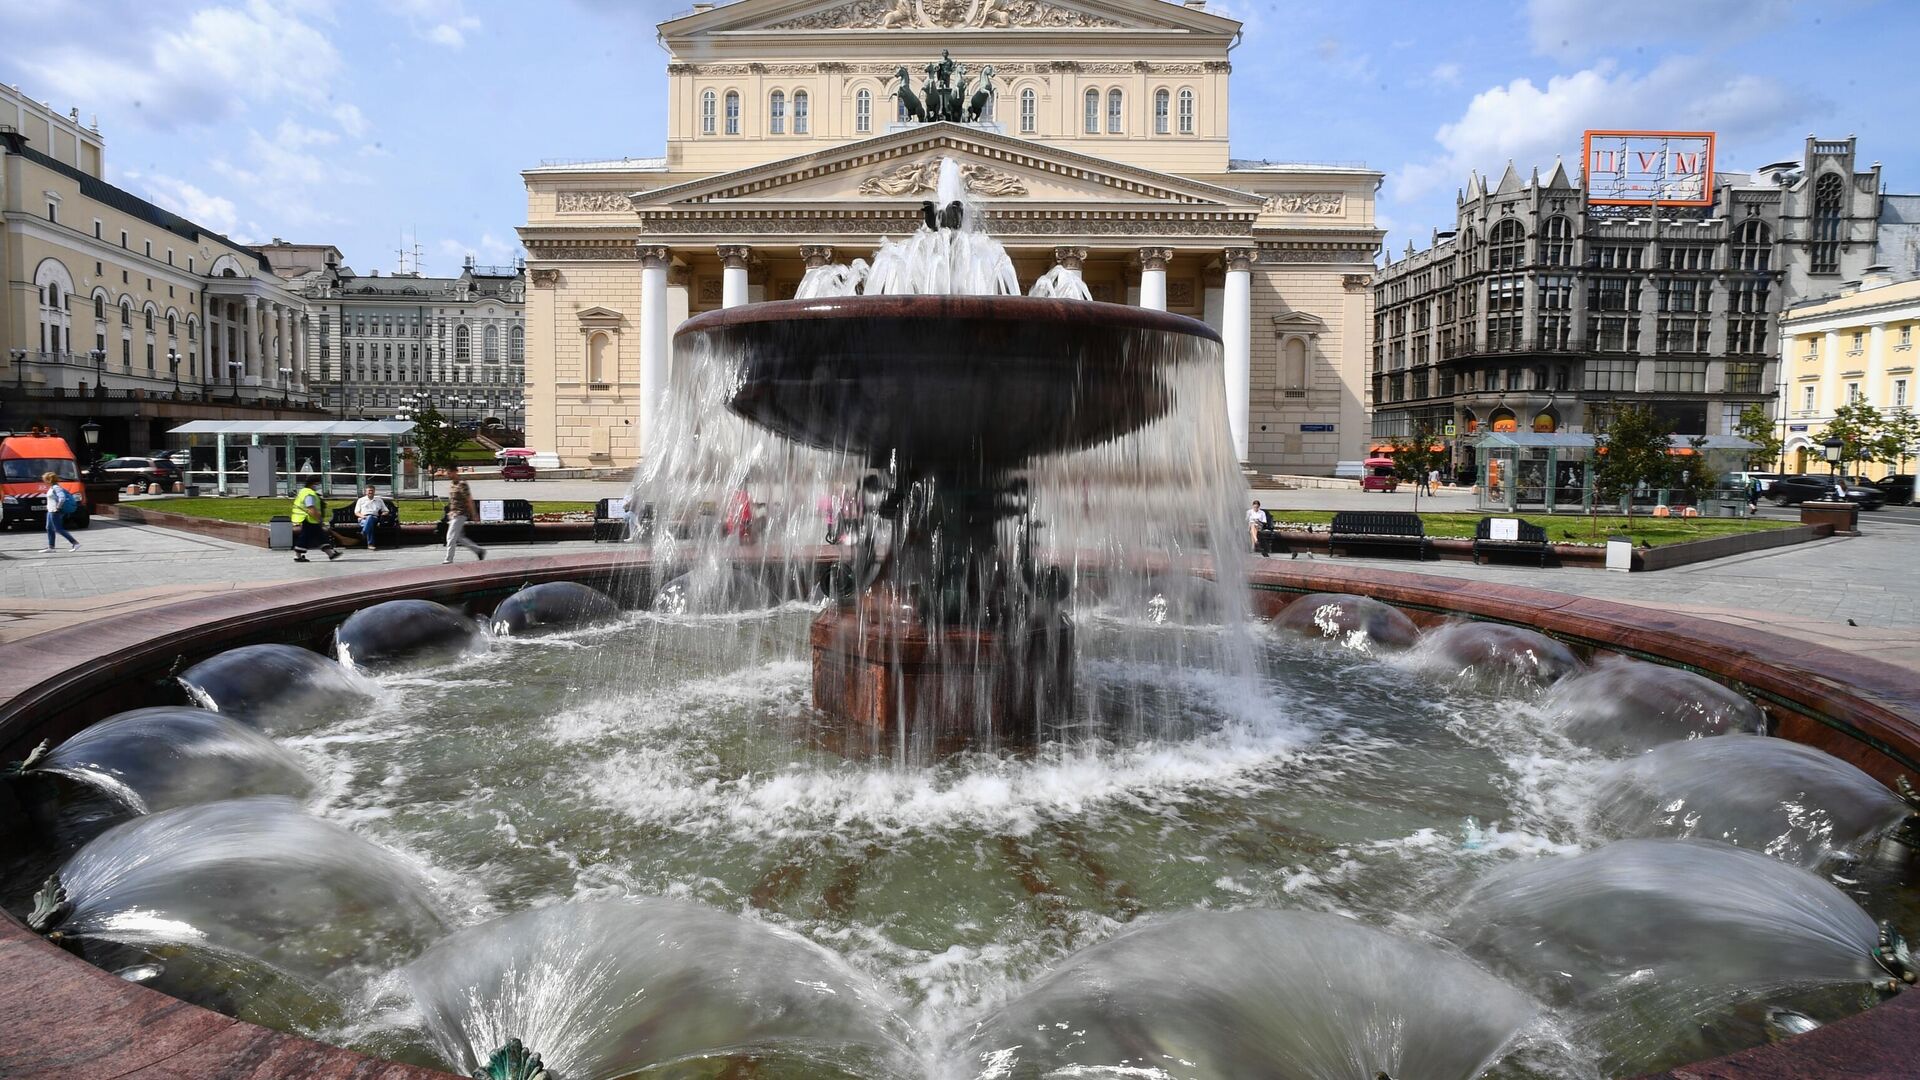 В Москве отреставрируют Петровский фонтан у Большого театра